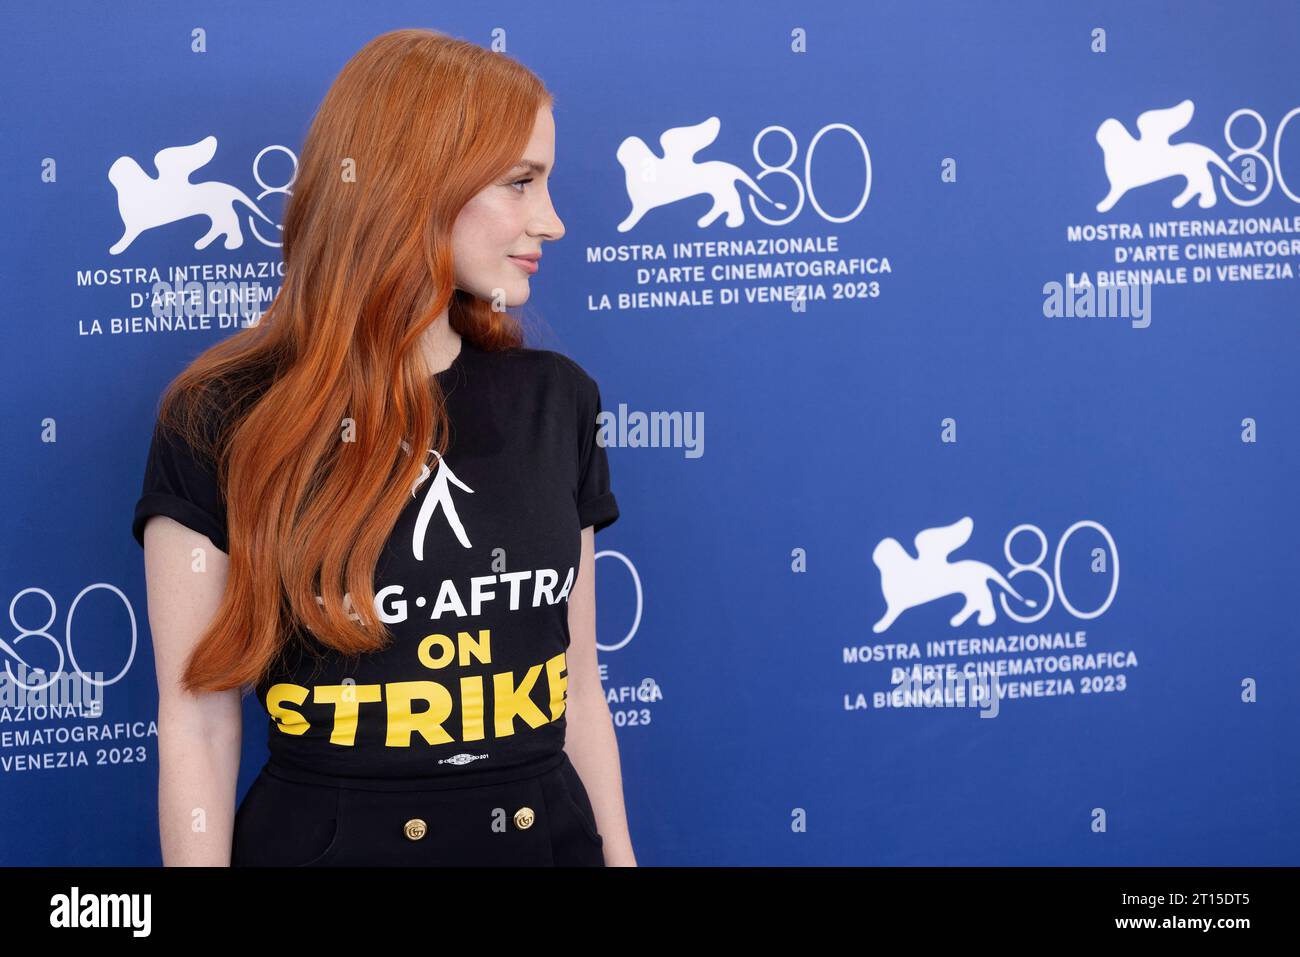 VENISE, ITALIE - SEPTEMBRE 08 : Jessica Chastain assiste à la photo-call pour le film "Memory" au 80e Festival International du film de Venise à Septembb Banque D'Images